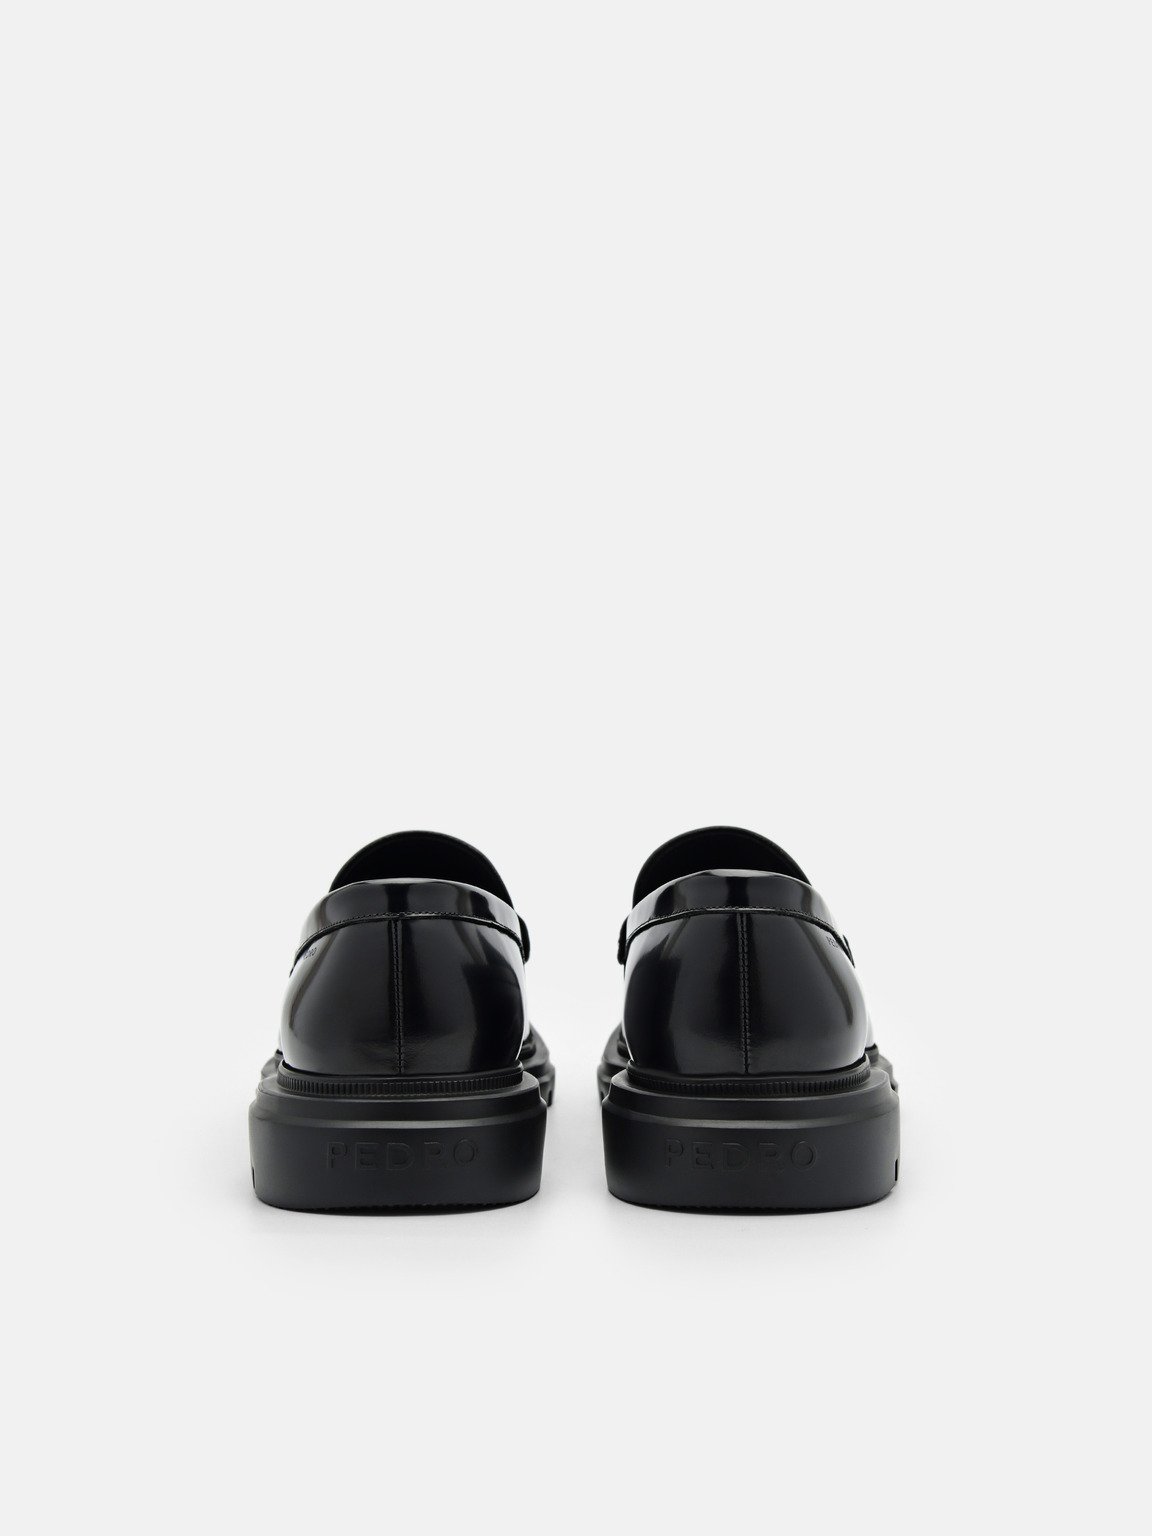 Men's Ellis Leather Loafers, Black